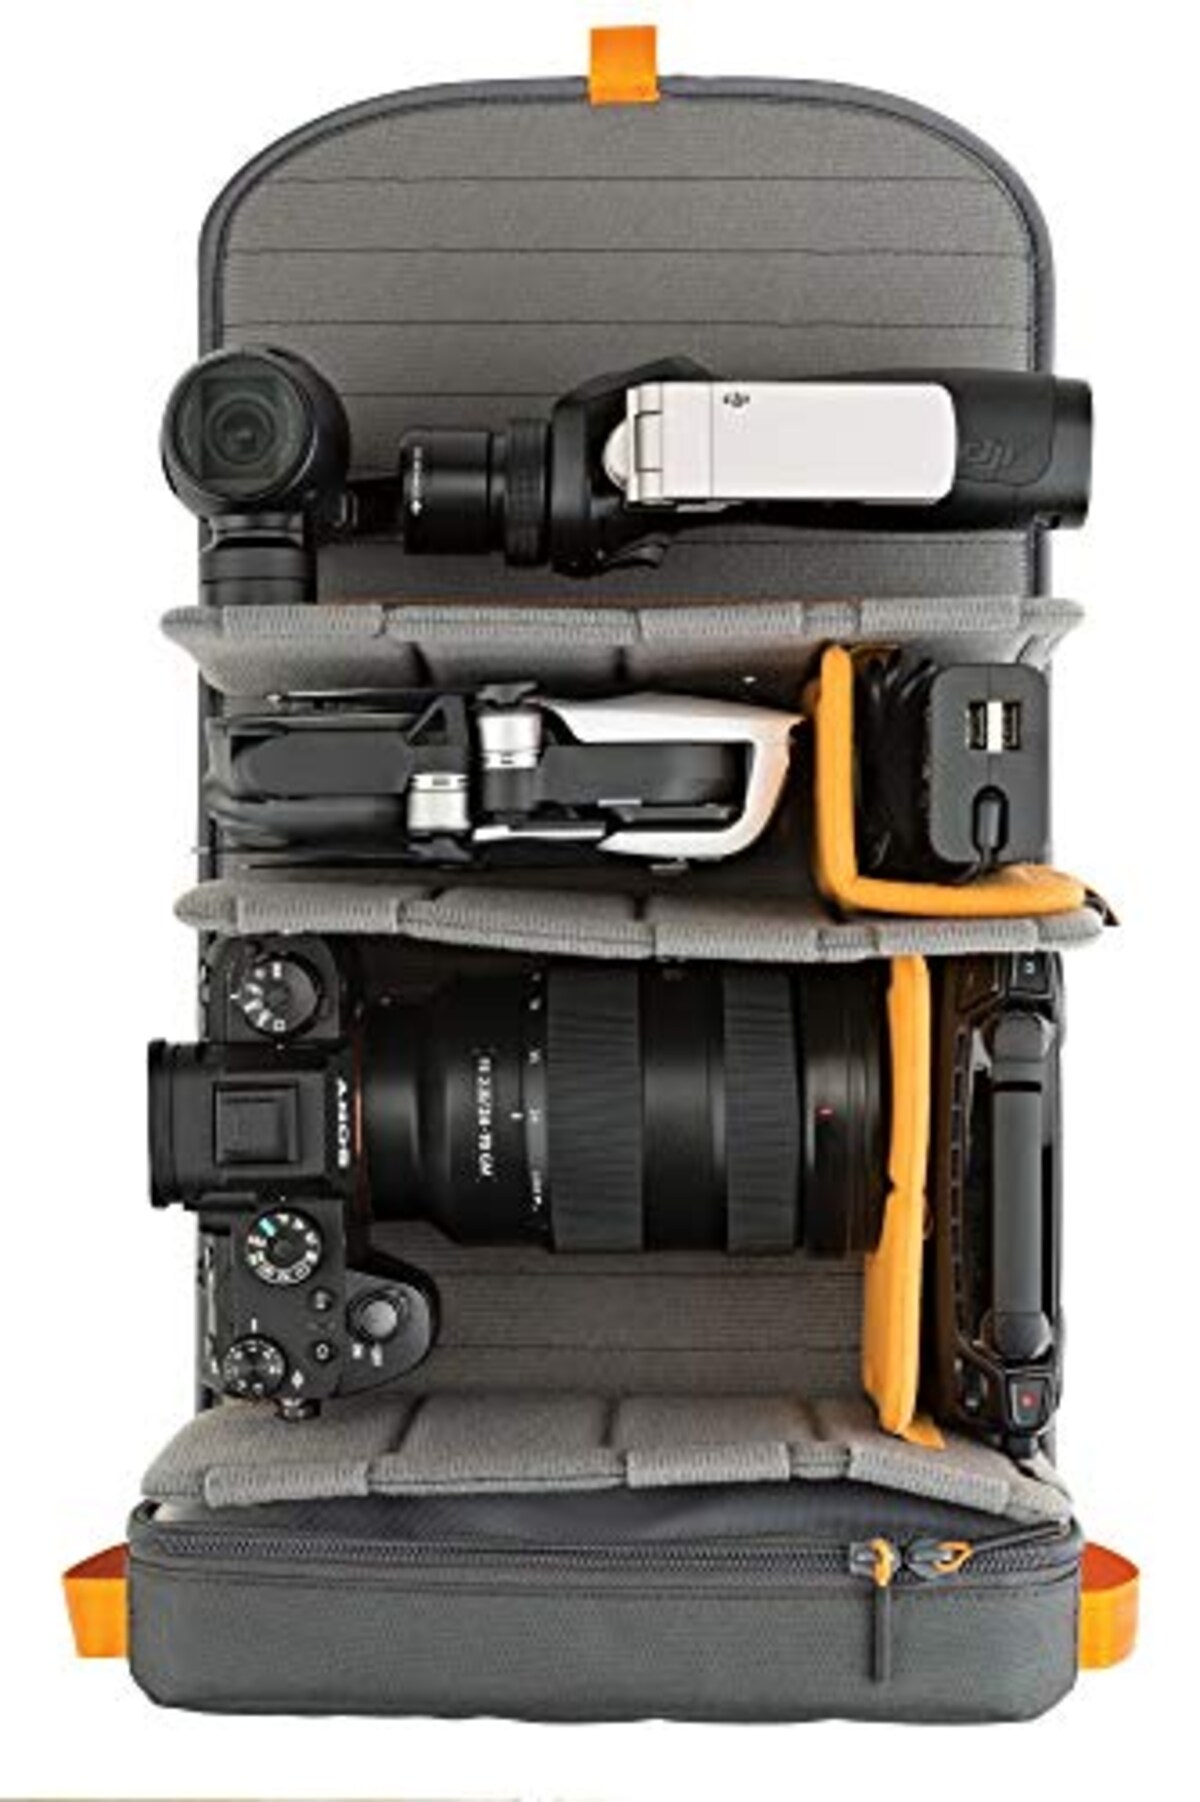  [Lowepro] カメラリュック フリーライン メンズ ブラック 48.7cm×29.3cm×20.8cm画像9 